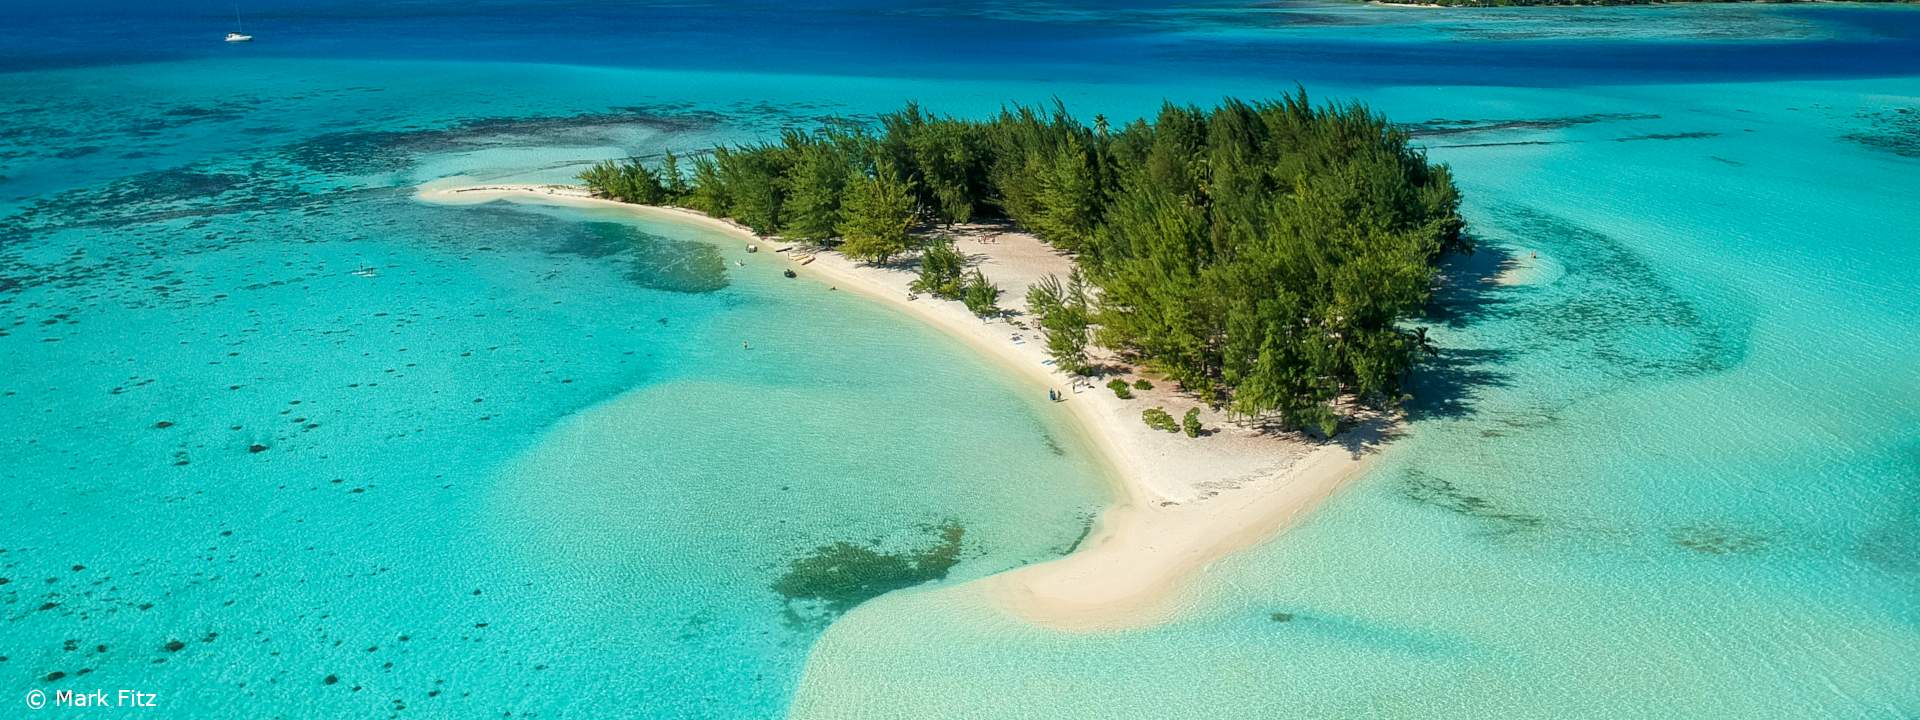 Découvrez la Polynésie & ses îles majestueuses à bord de Panorama II